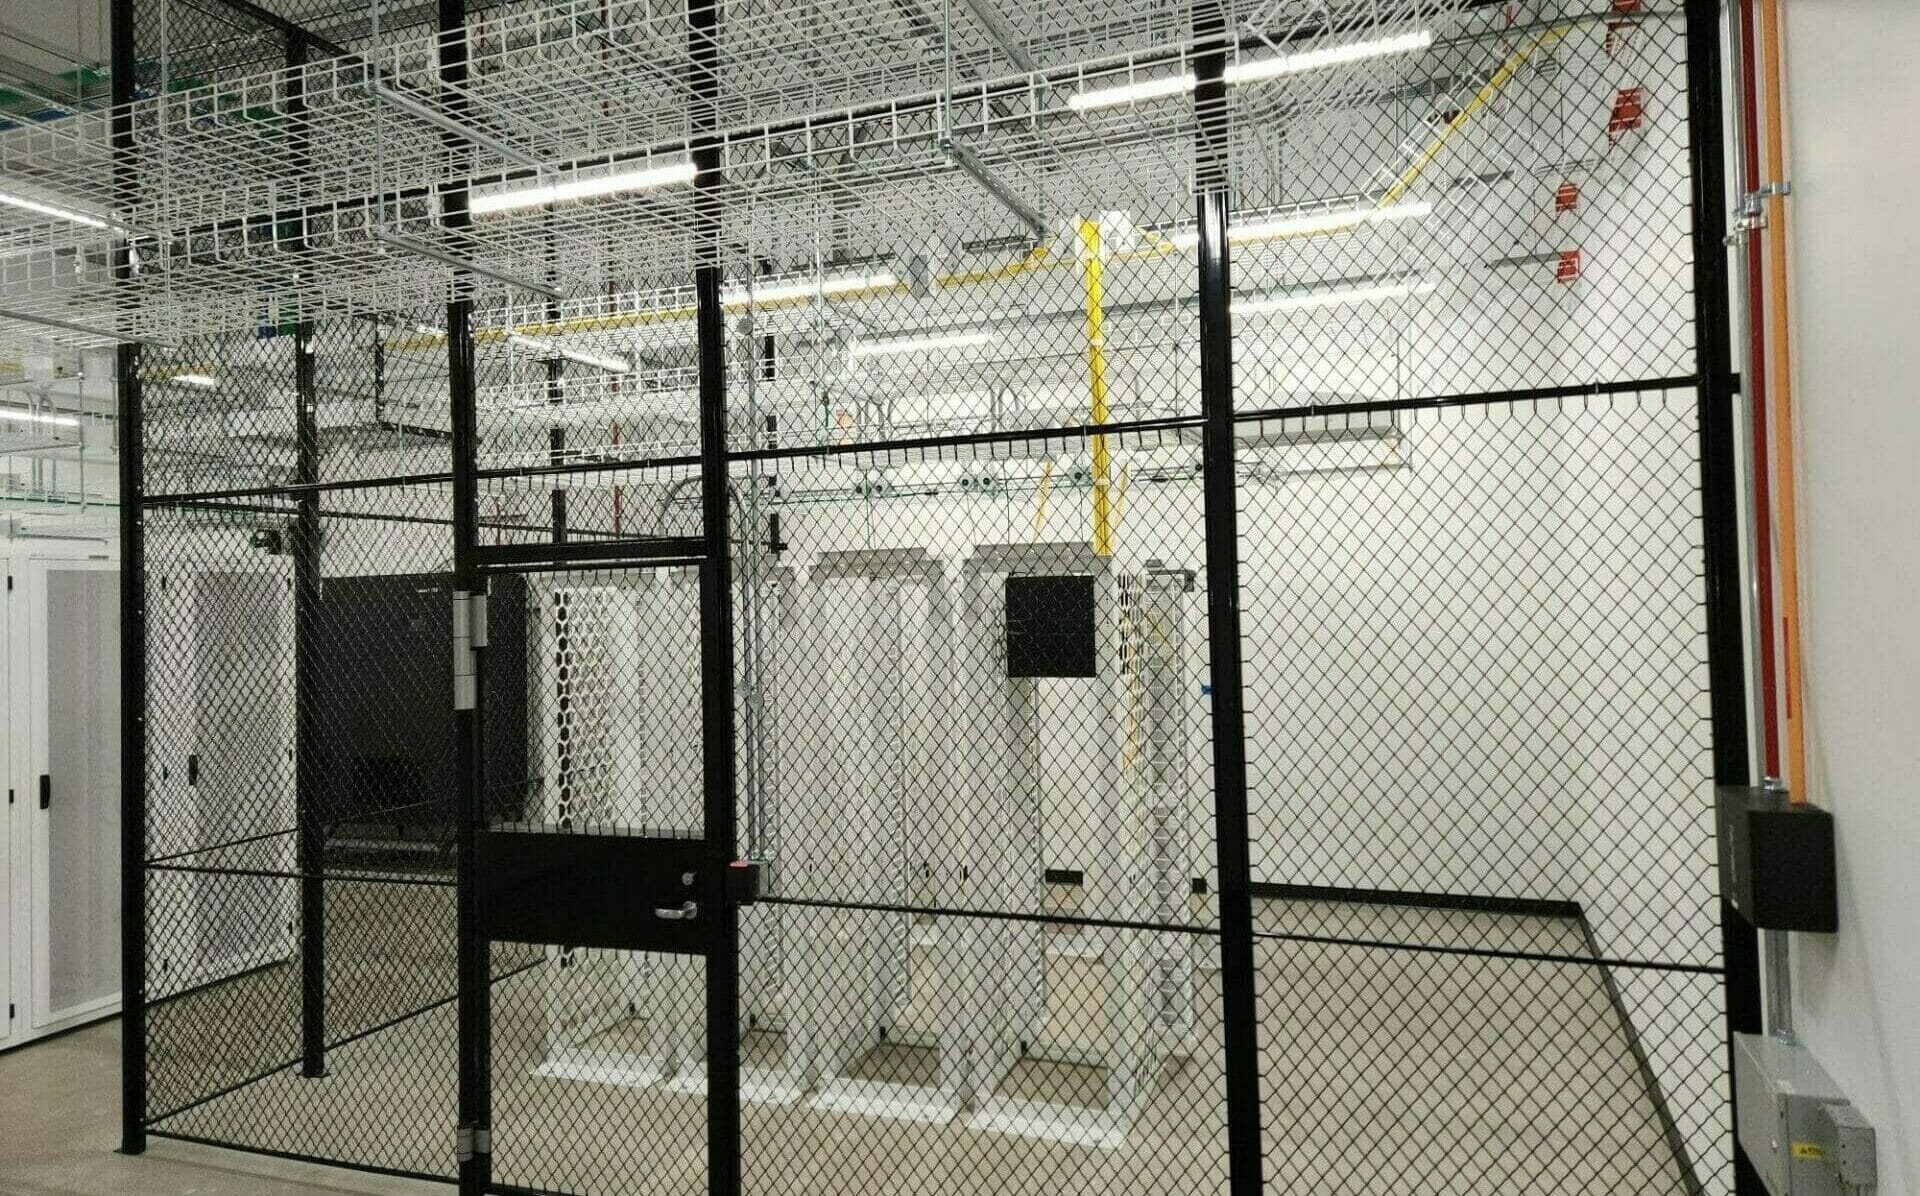 Principal data centre